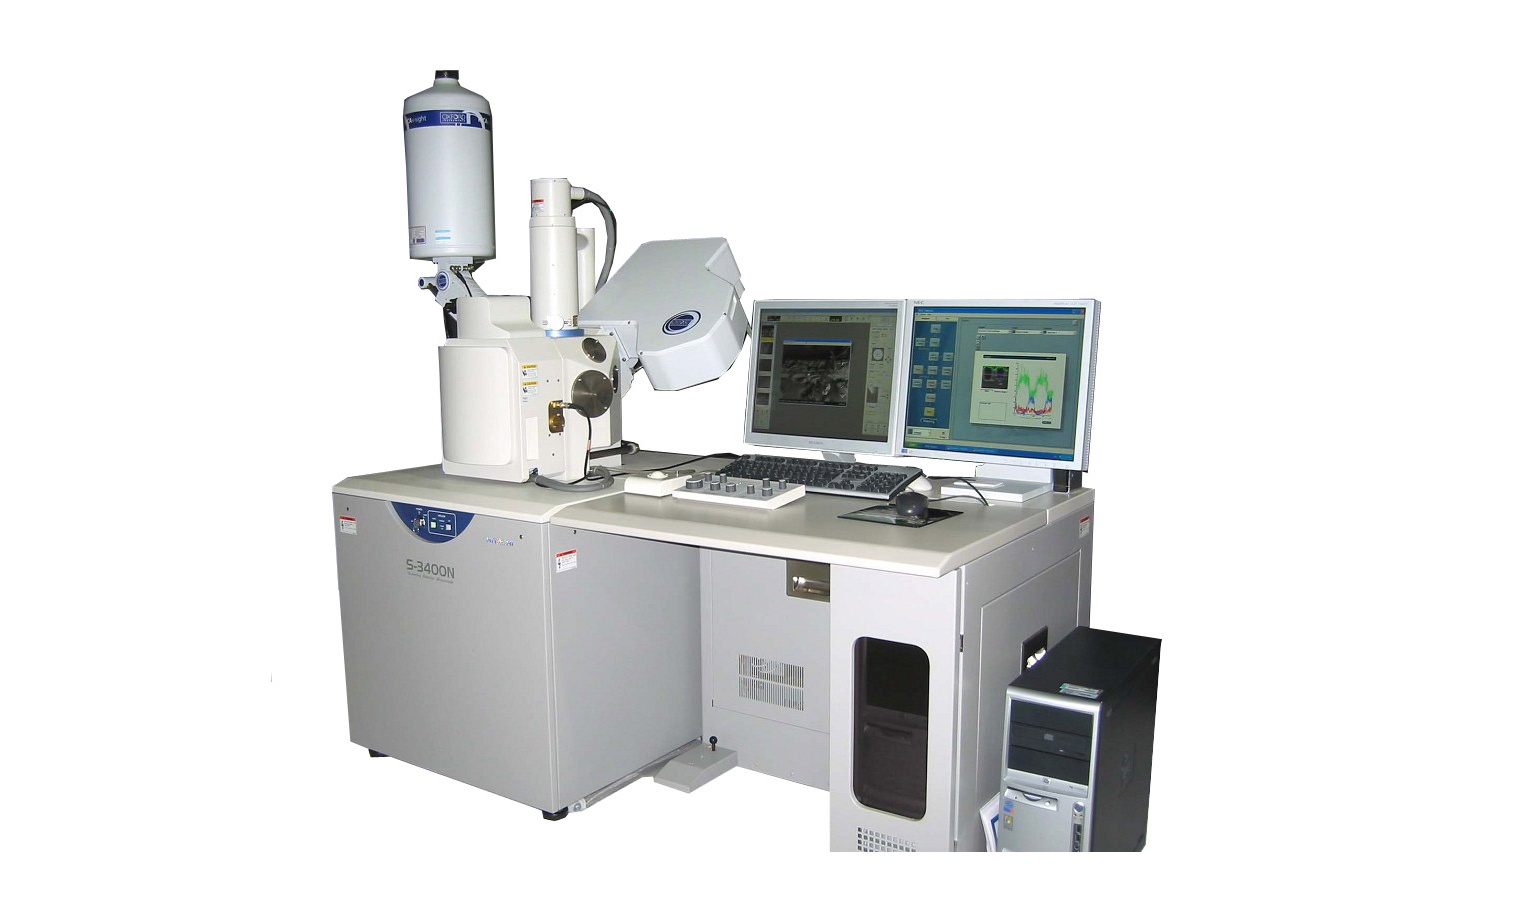 中国冶金地质总局桌面扫描电子显微镜等仪器设备采购项目中标公告